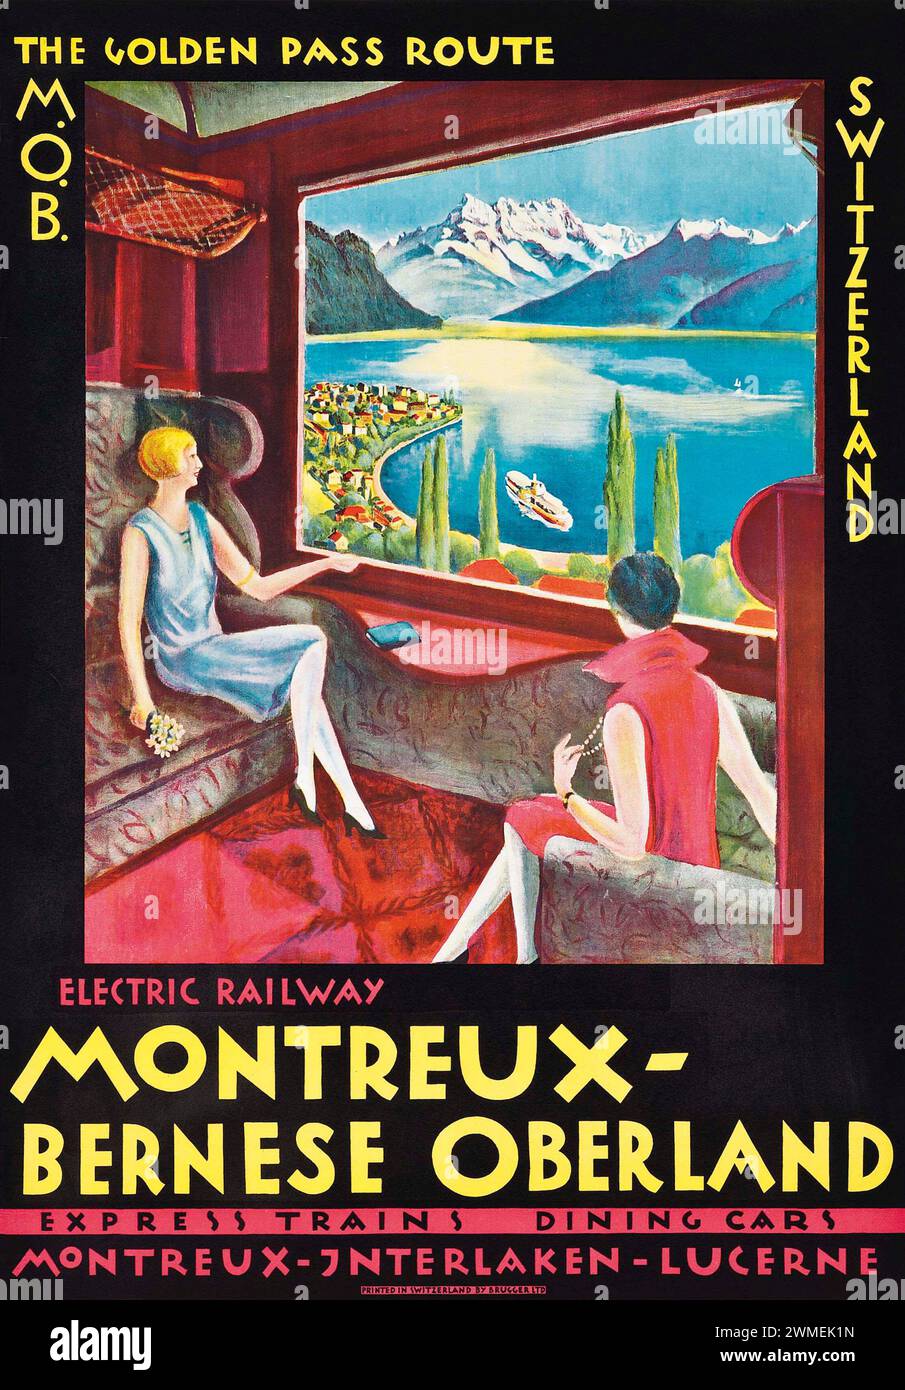 Oldtimer-Bahnreiseposter für den Montreux Bernese Oberland Express-Zug. Schweiz, 1920er Jahre Stockfoto